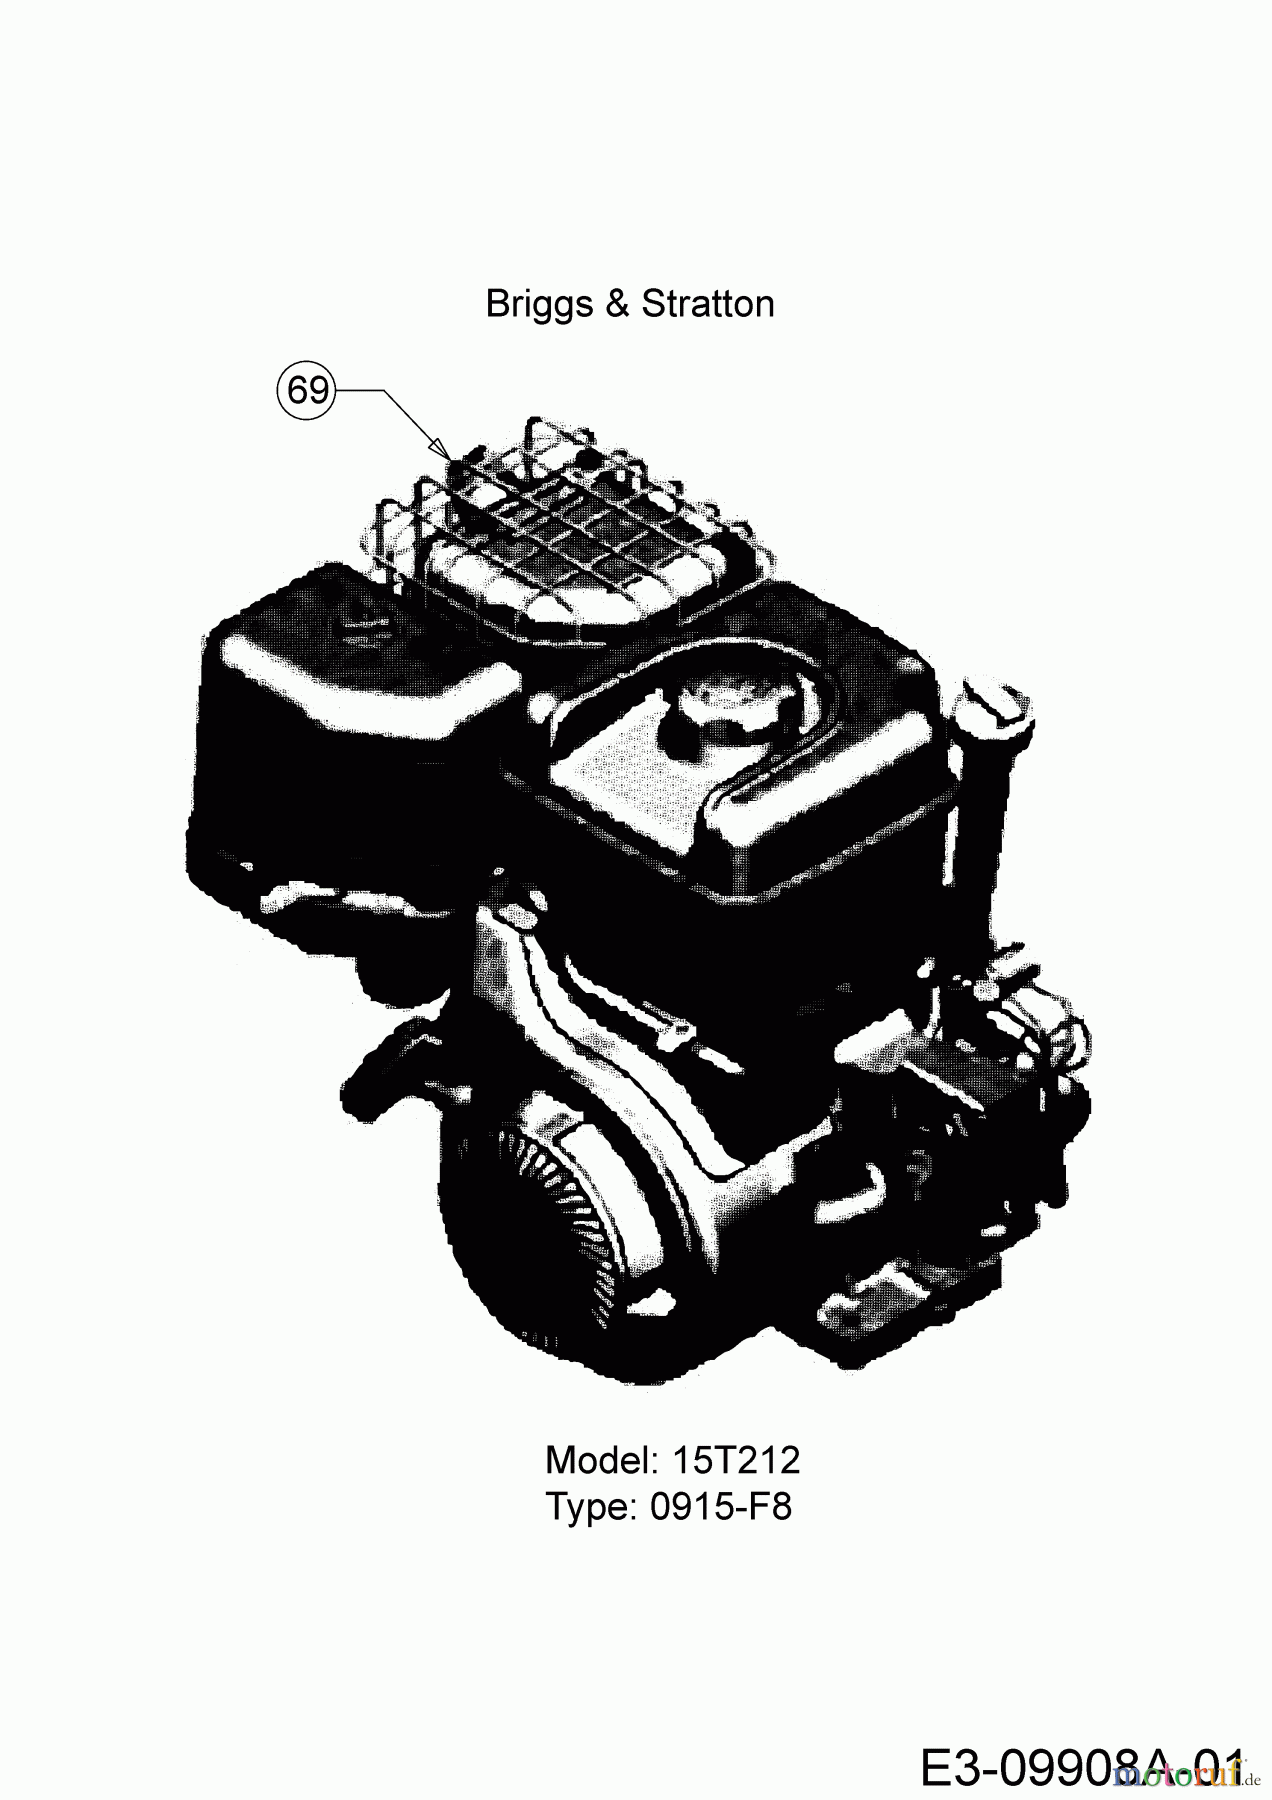  Troy-Bilt Häcksler CS 4325 24B-424M766  (2016) Motor Briggs & Stratton